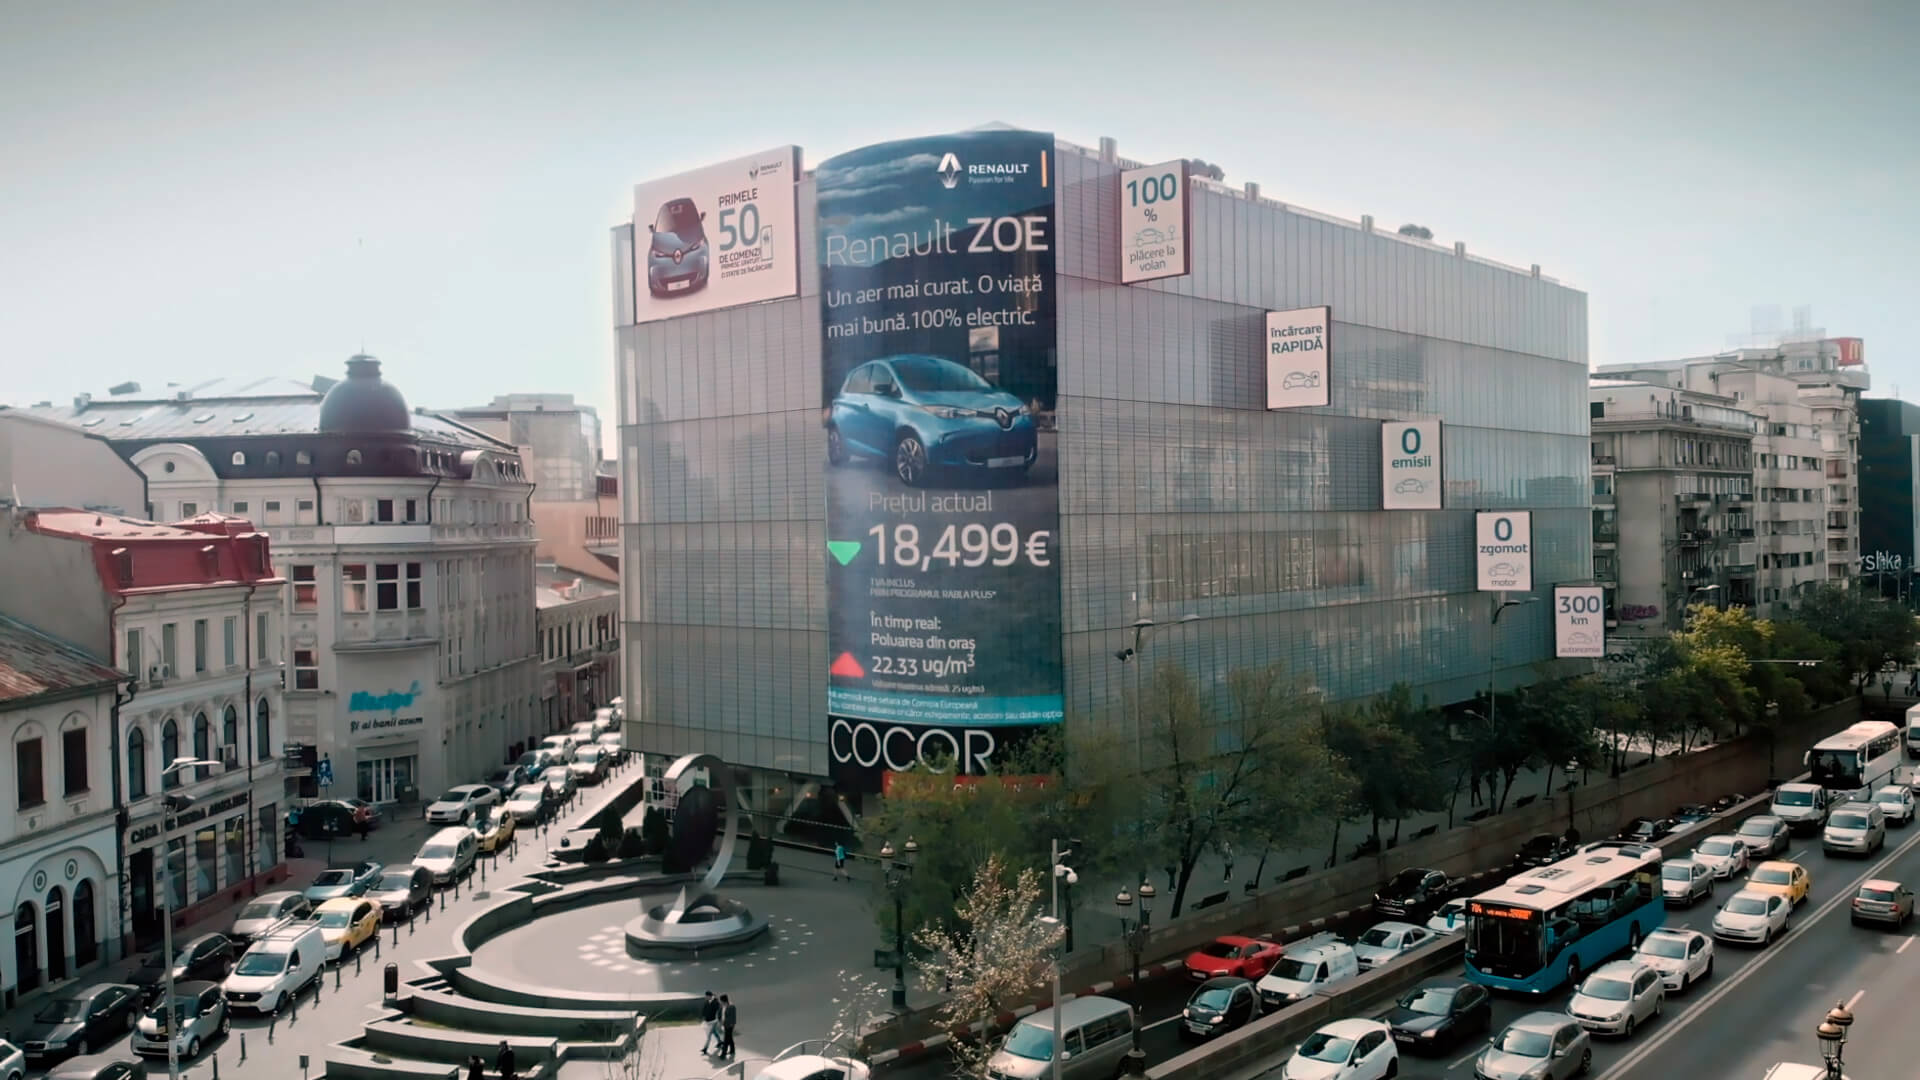 Когда загрязнение воздуха увеличивается, цены на электромобили Renault снижаются в режиме реального времени на румынском билборде